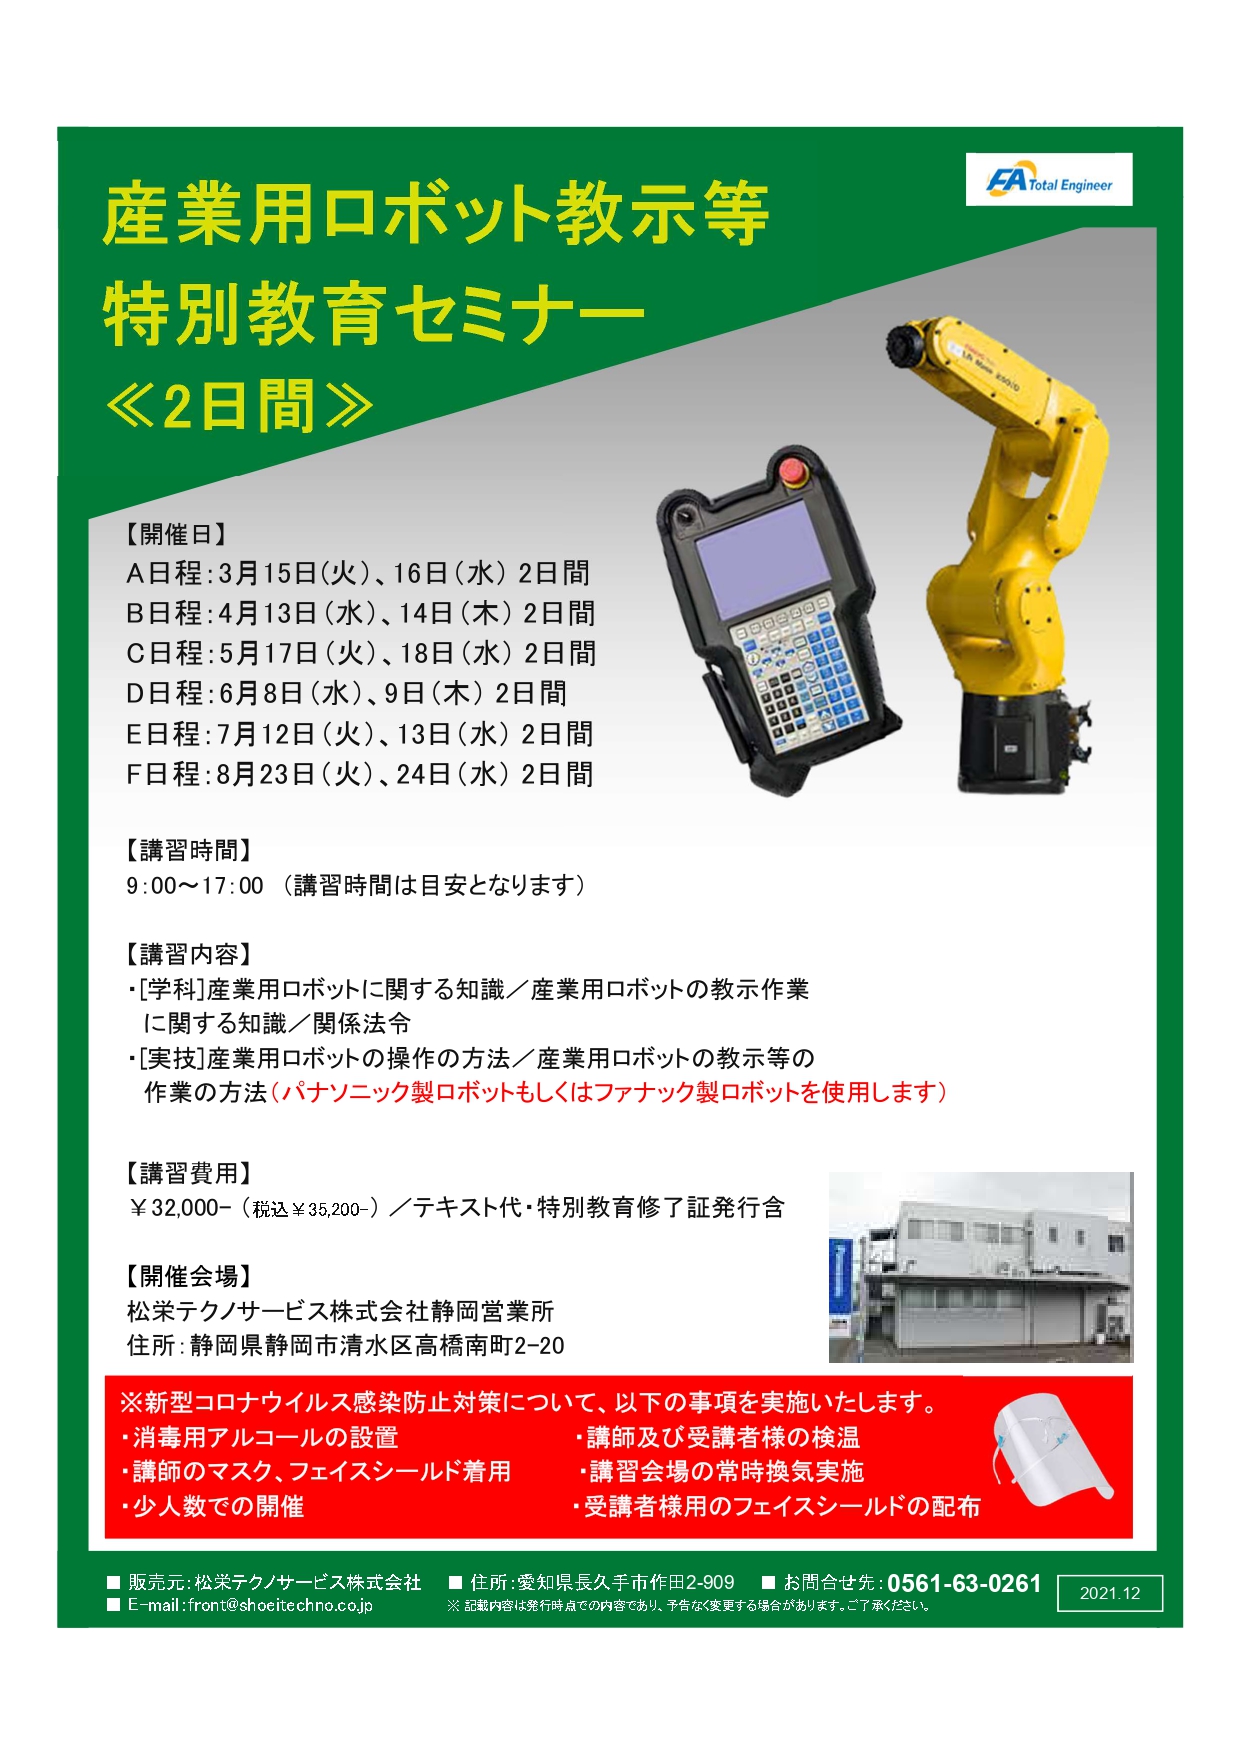 【静岡県開催】産業用ロボット特別教育（教示等）セミナー開催のお知らせ アイキャッチ